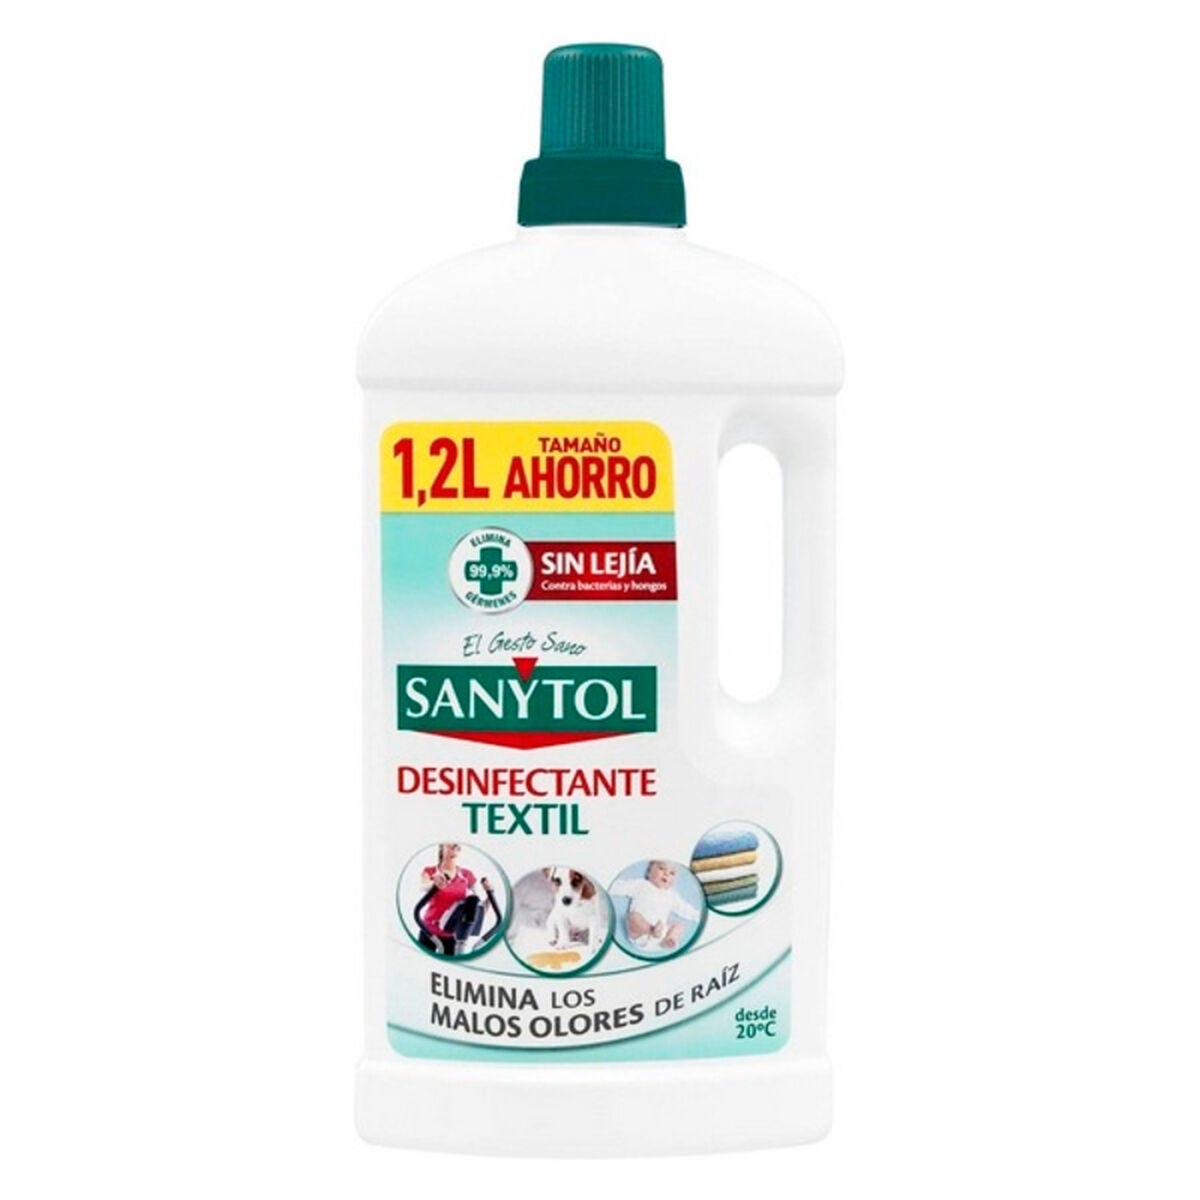 Eliminador de Olores Sanytol Desinfectante Textil (1200 ml) 8411660170378  S0578790 Sanytol